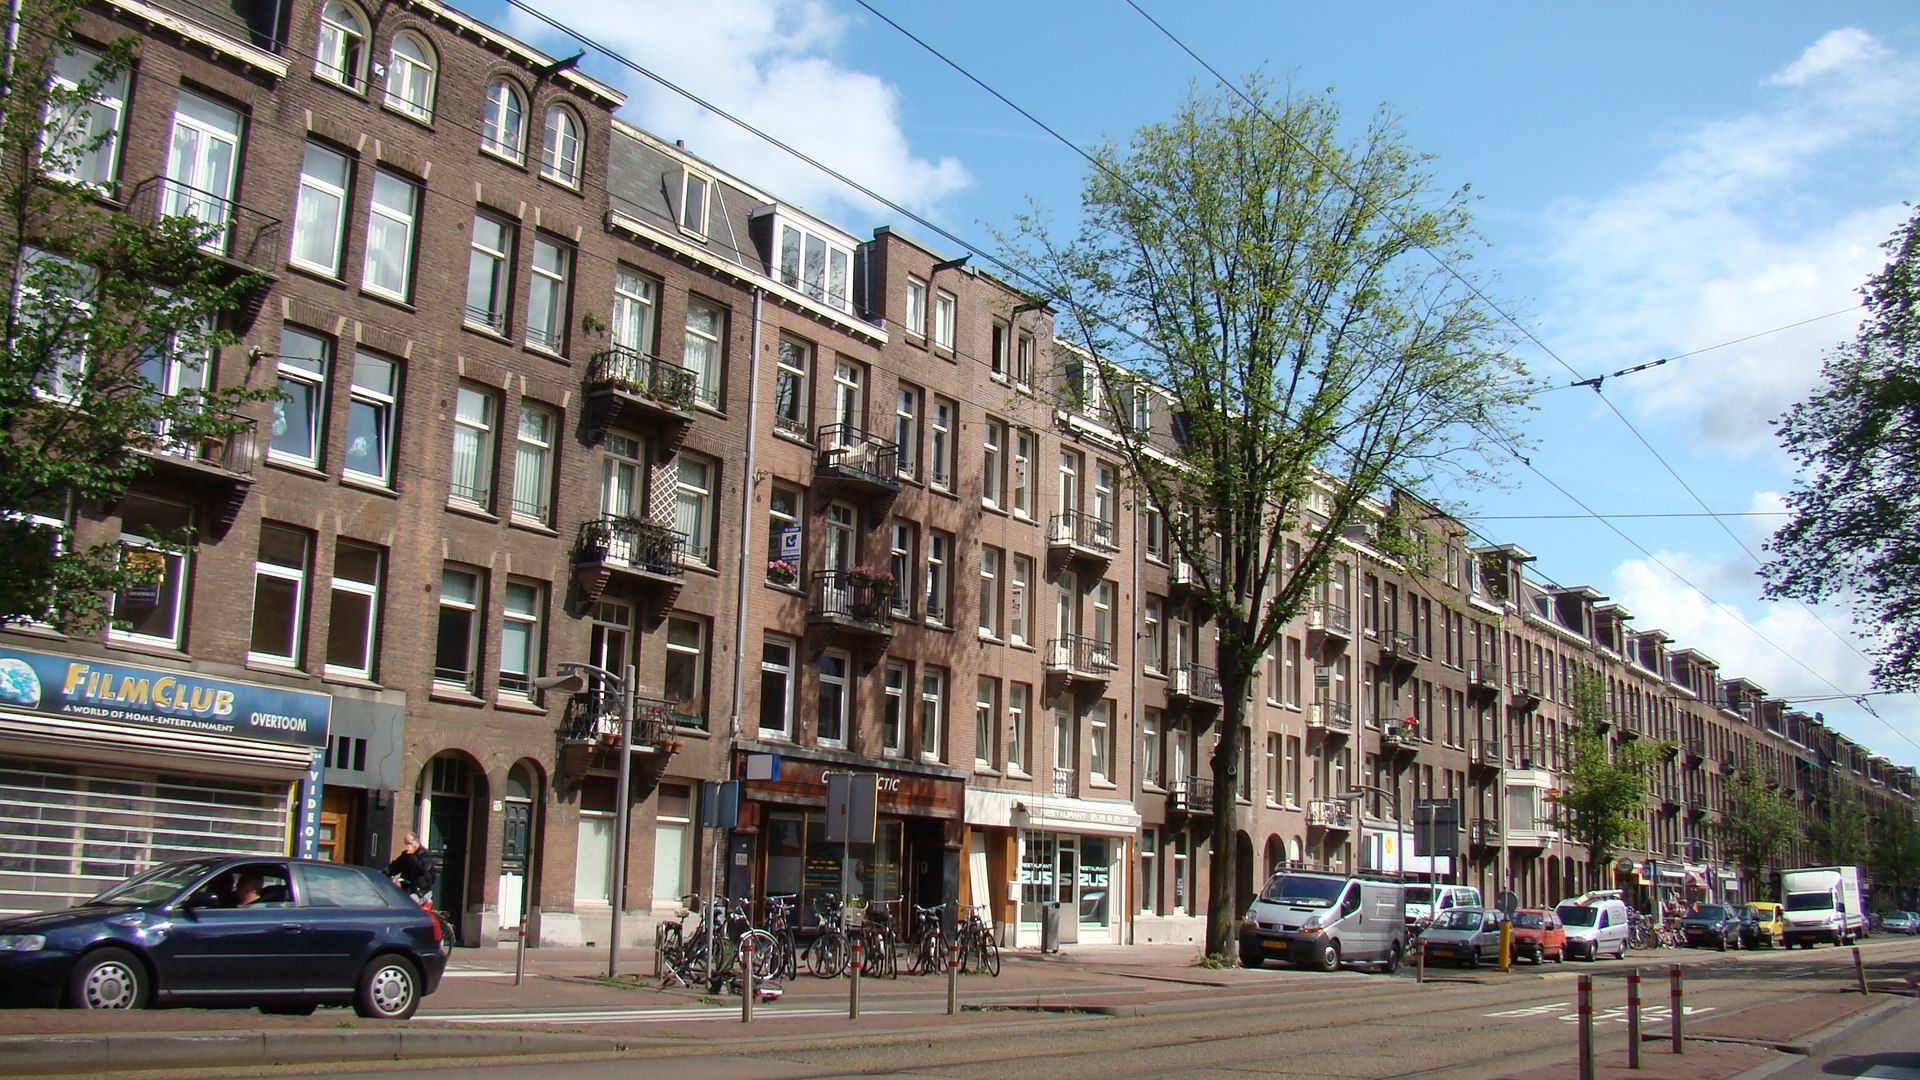 Скачать обои бесплатно Города, Улица, Нидерланды, Амстердам, Сделано Человеком картинка на рабочий стол ПК